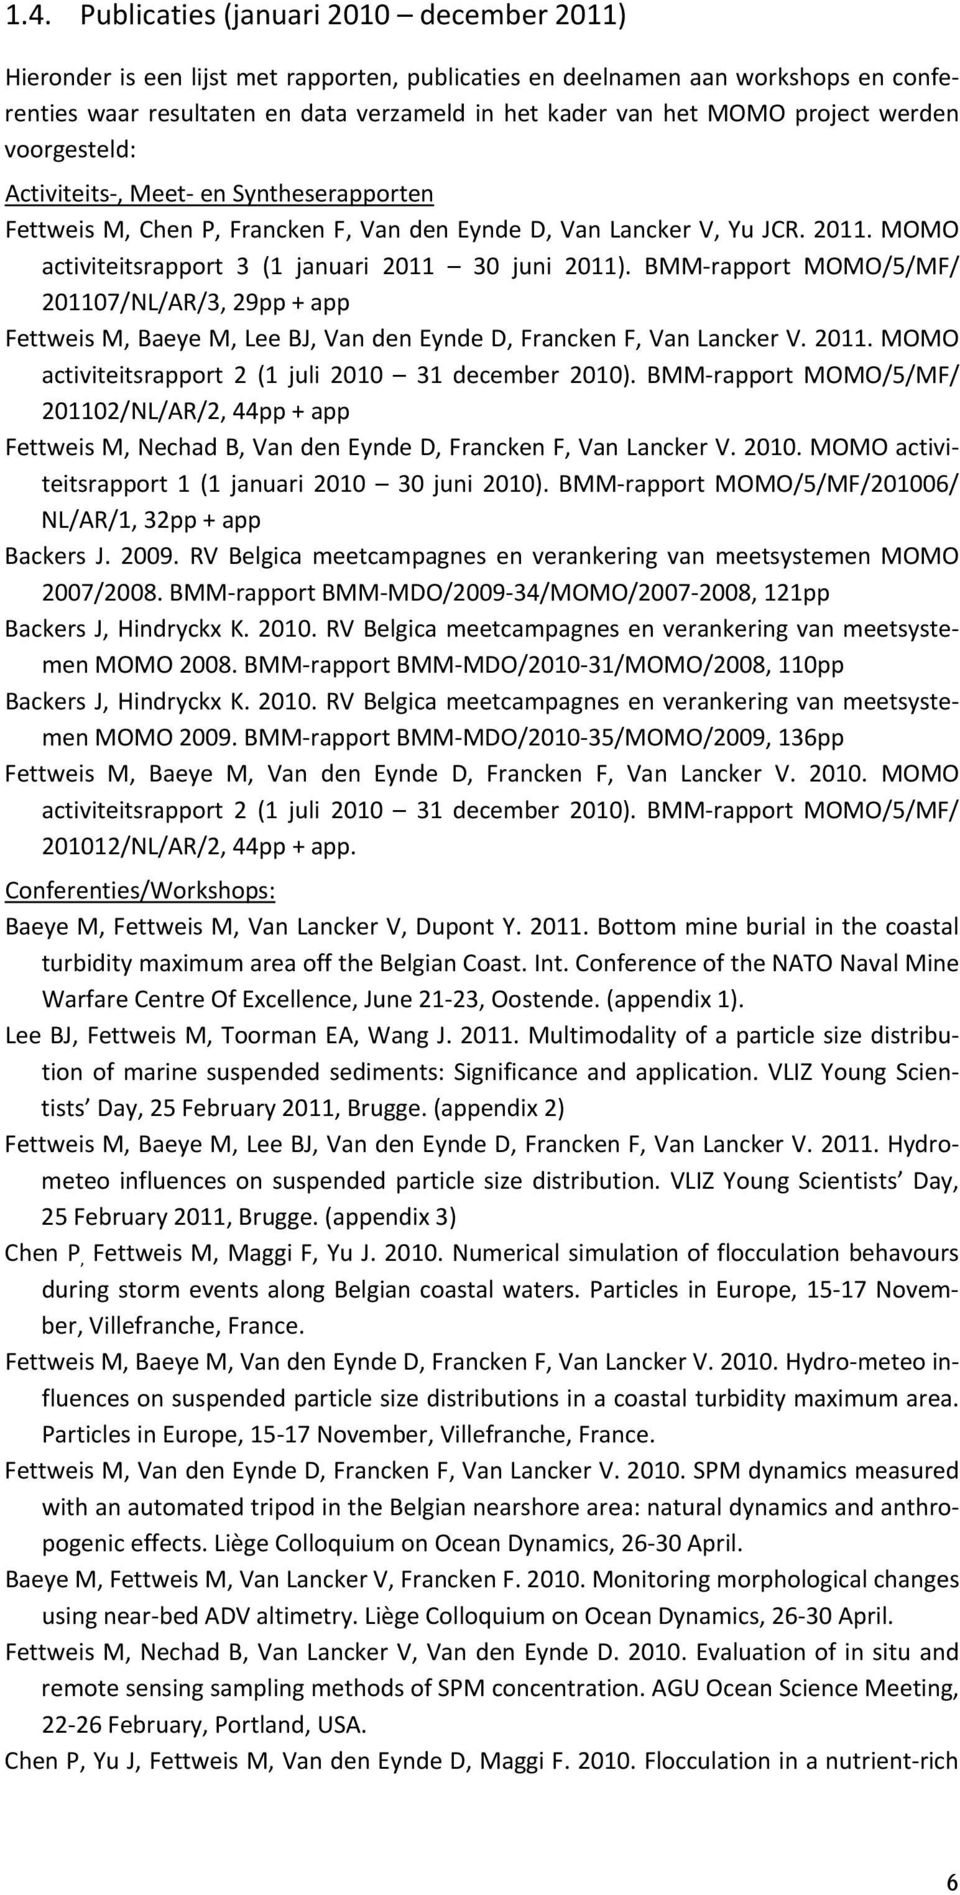 MOMO activiteitsrapport 3 (1 januari 2011 30 juni 2011). BMM rapport MOMO/5/MF/ 201107/NL/AR/3, 29pp + app Fettweis M, Baeye M, Lee BJ, Van den Eynde D, Francken F, Van Lancker V. 2011. MOMO activiteitsrapport 2 (1 juli 2010 31 december 2010).